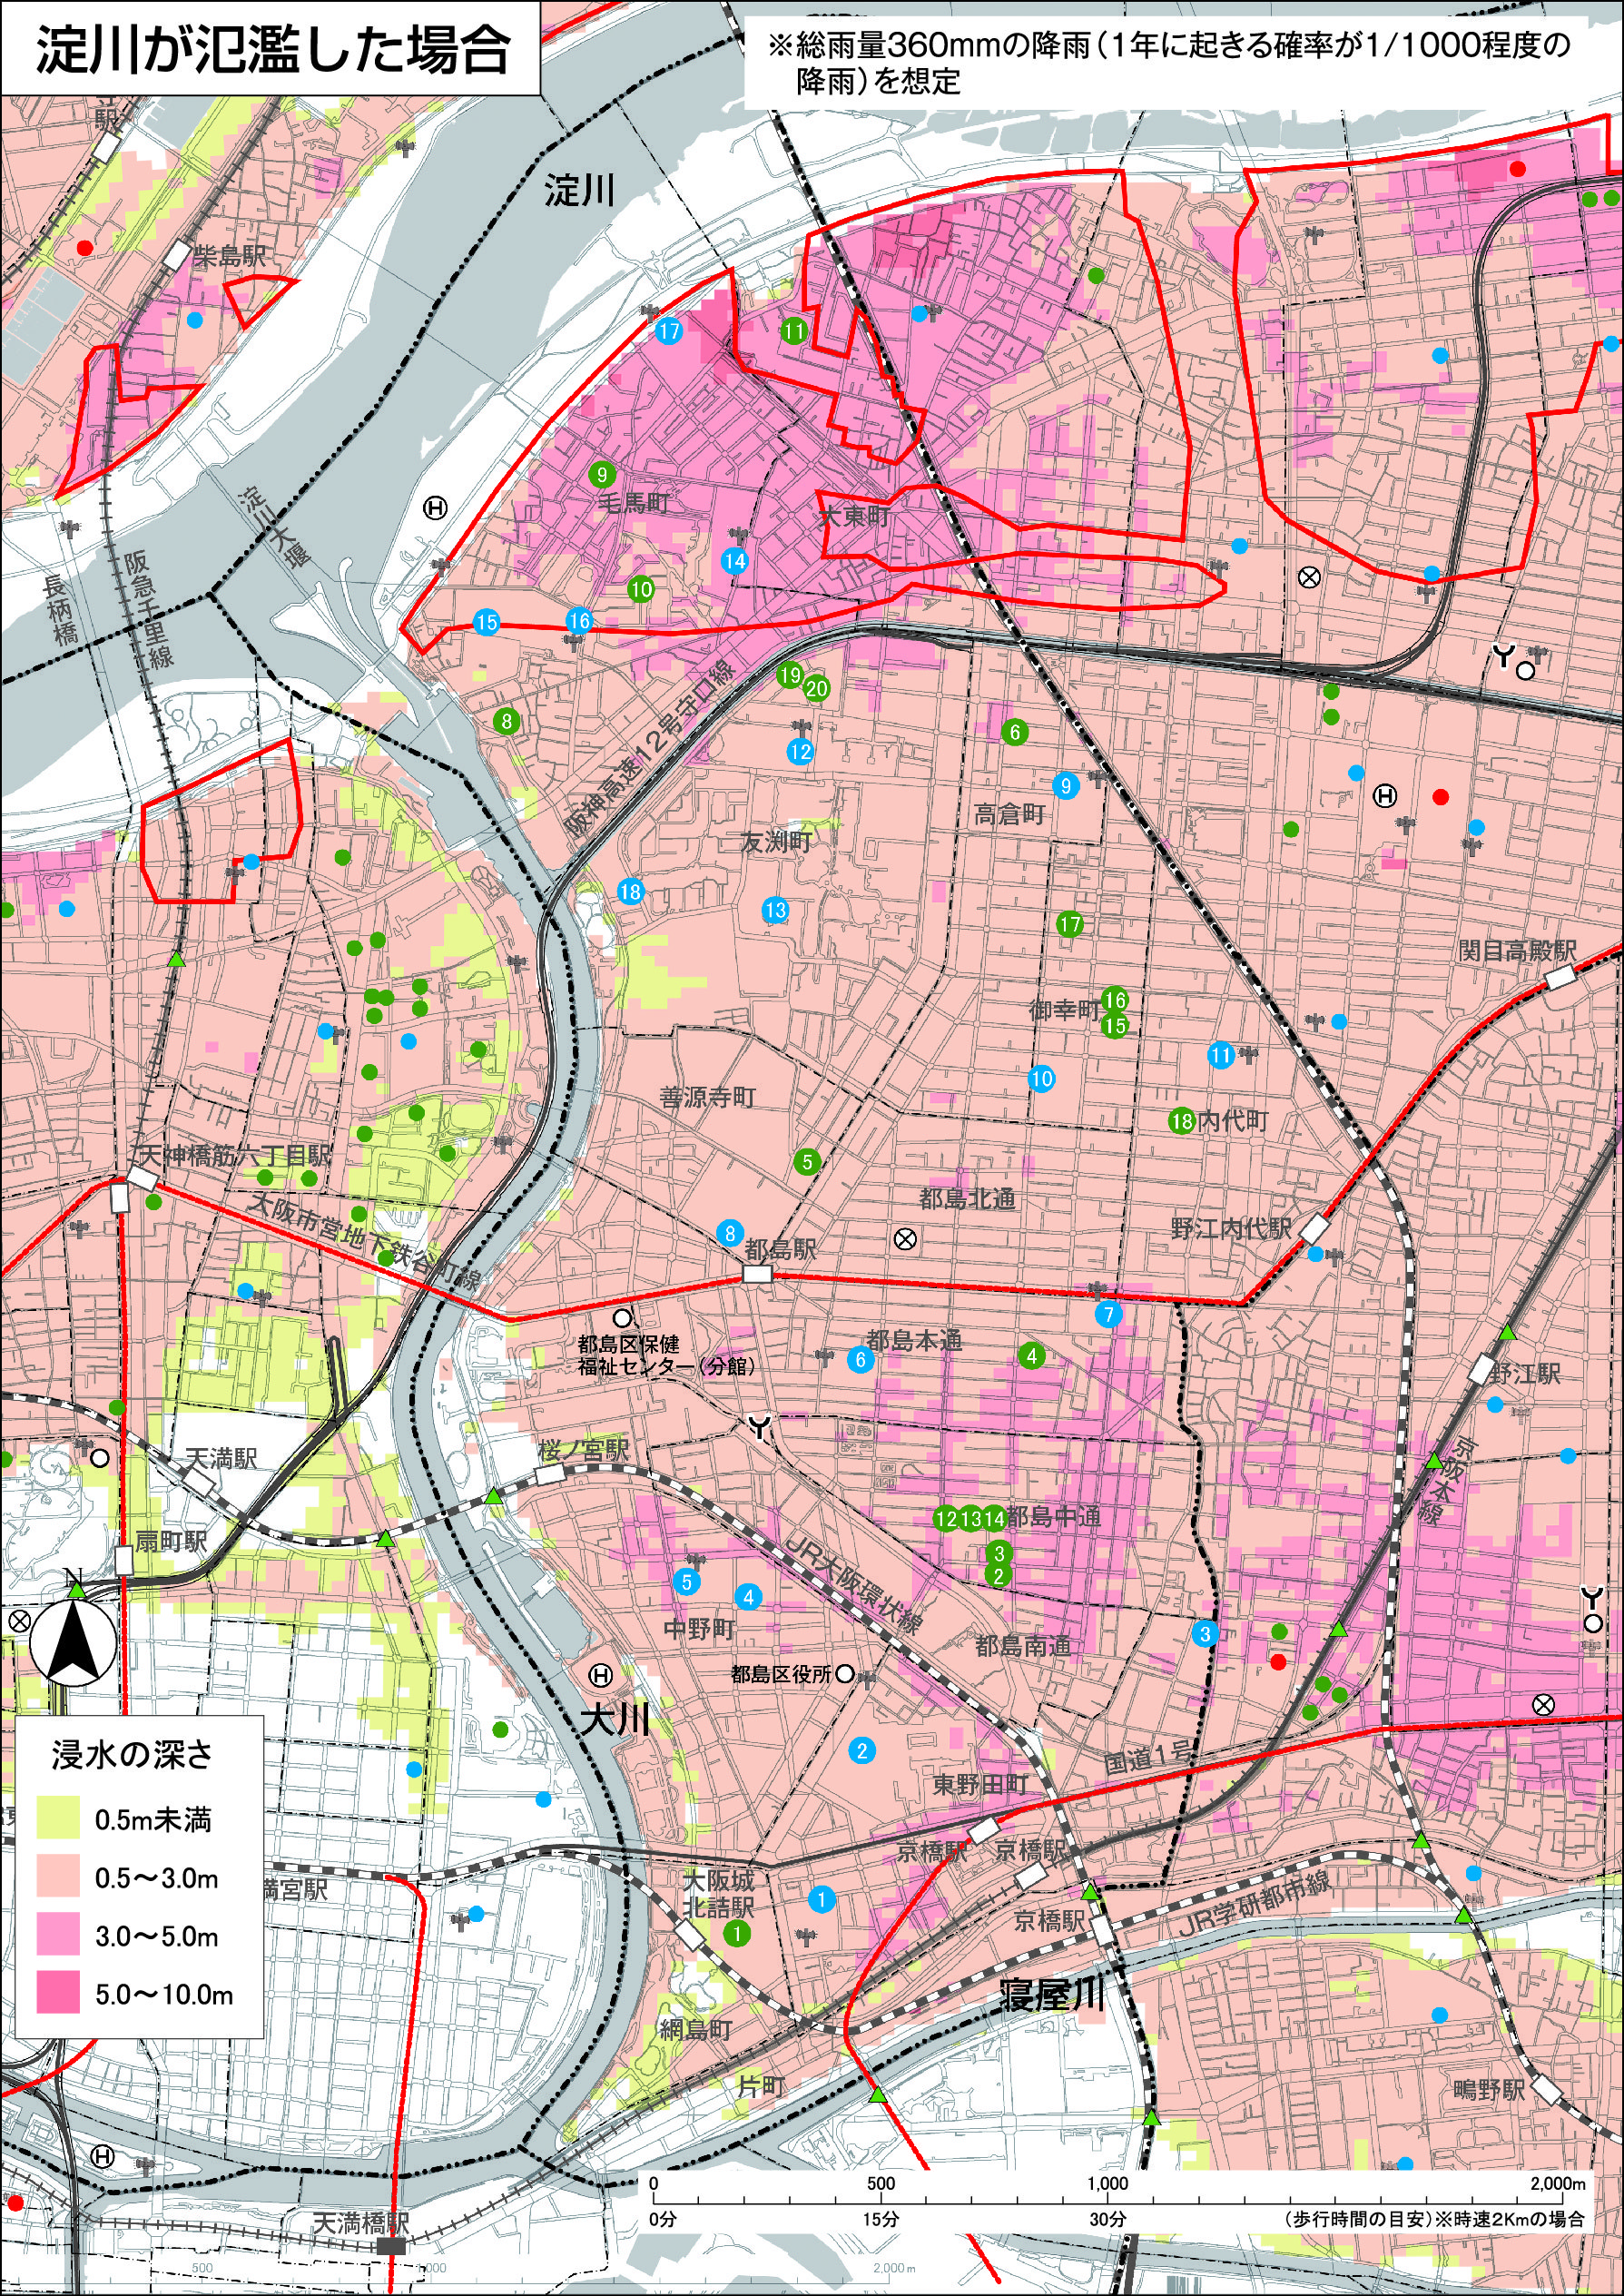 大阪市 水害ハザードマップ 都島区 災害に備える ハザードマップ